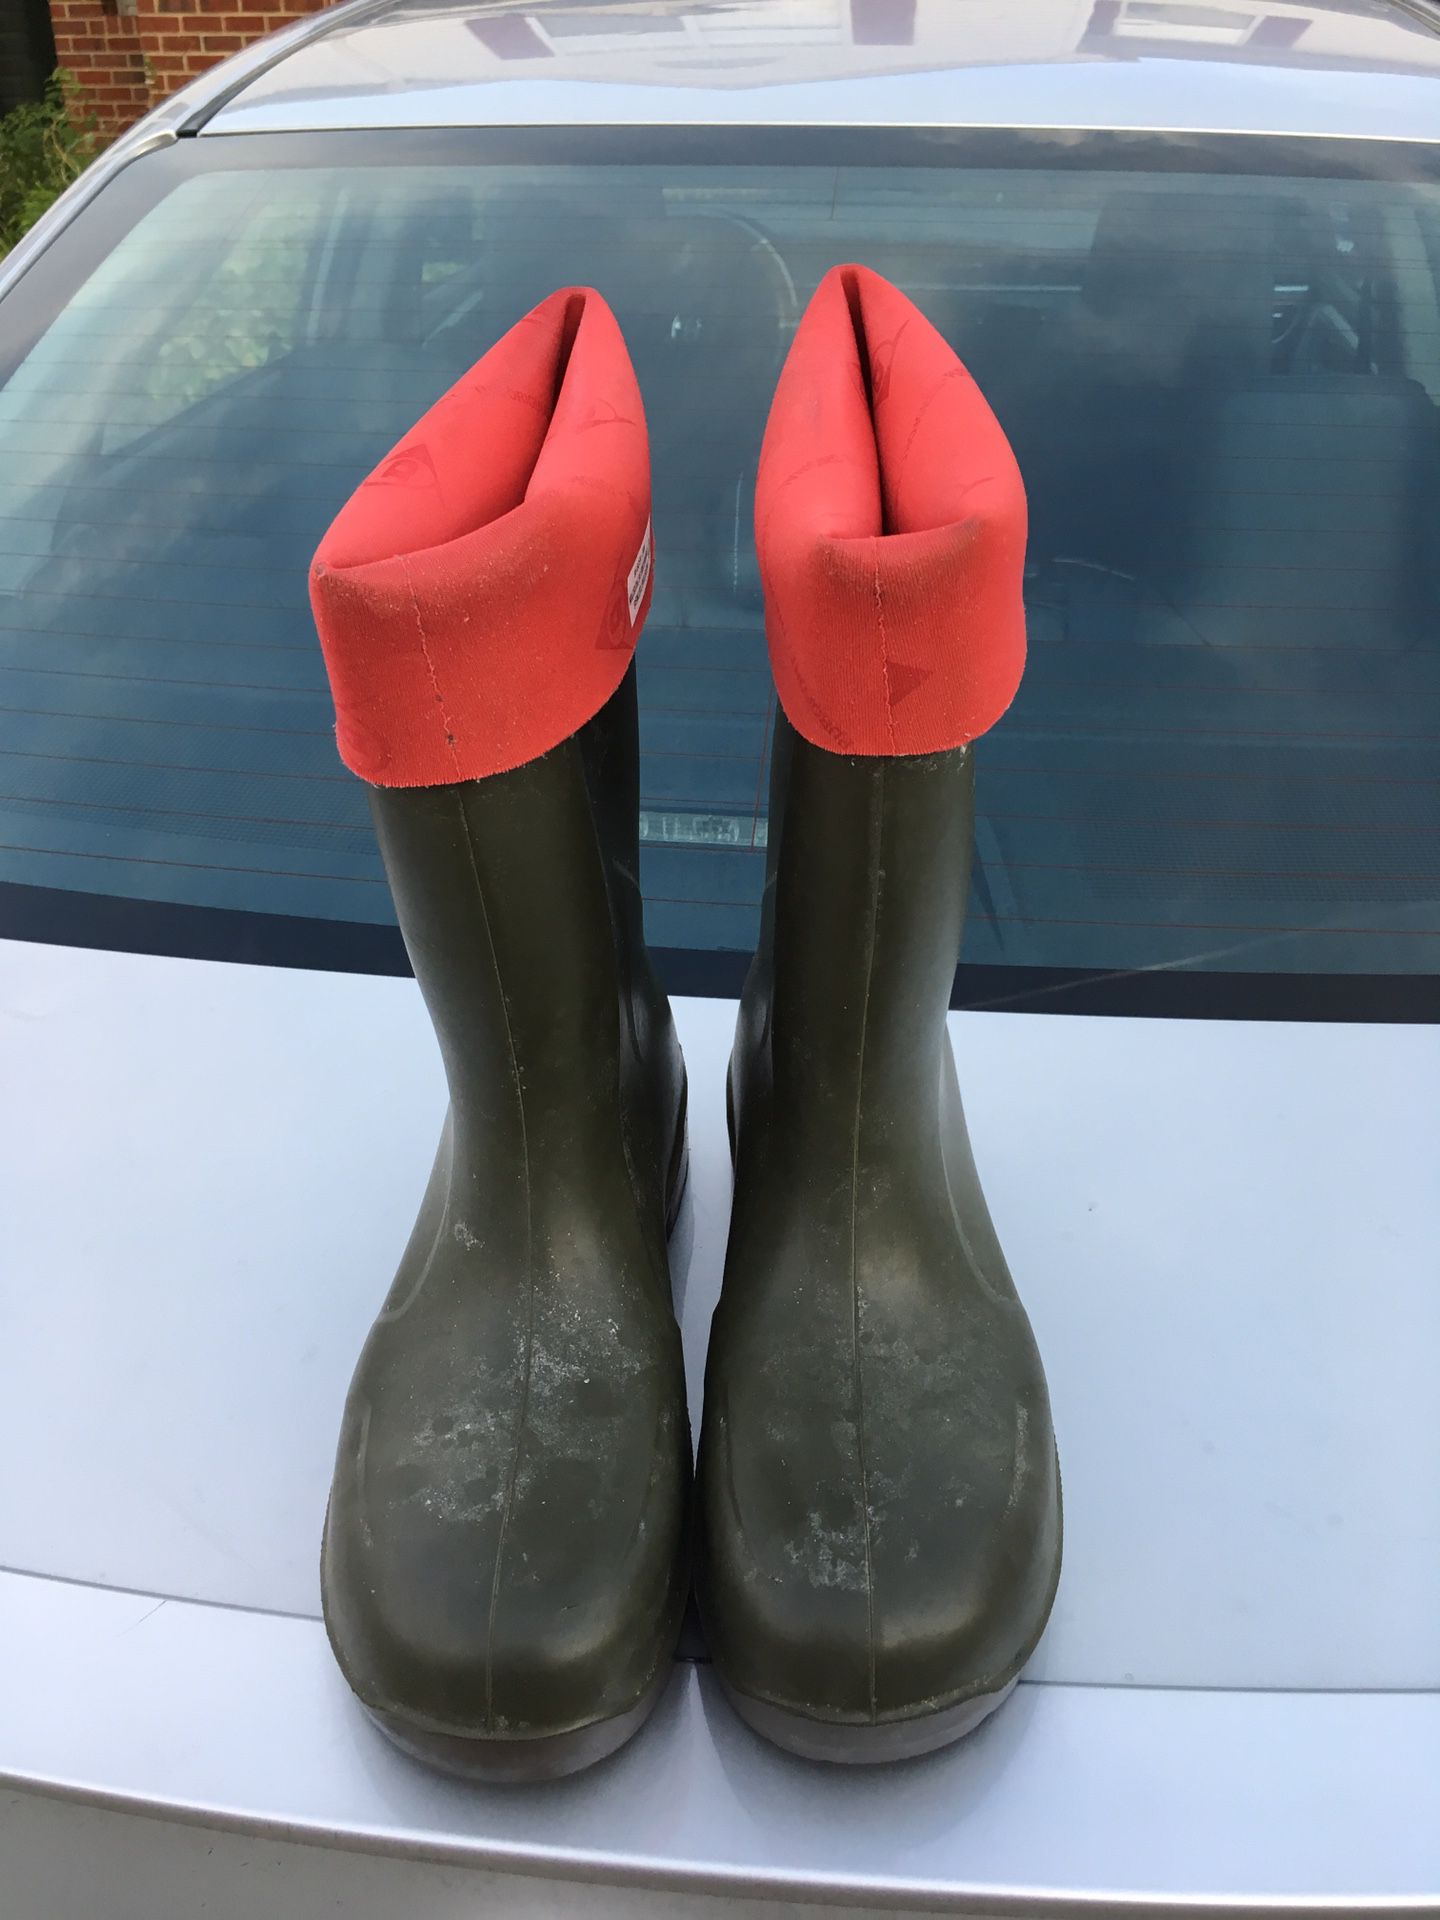 Smithfield work boots